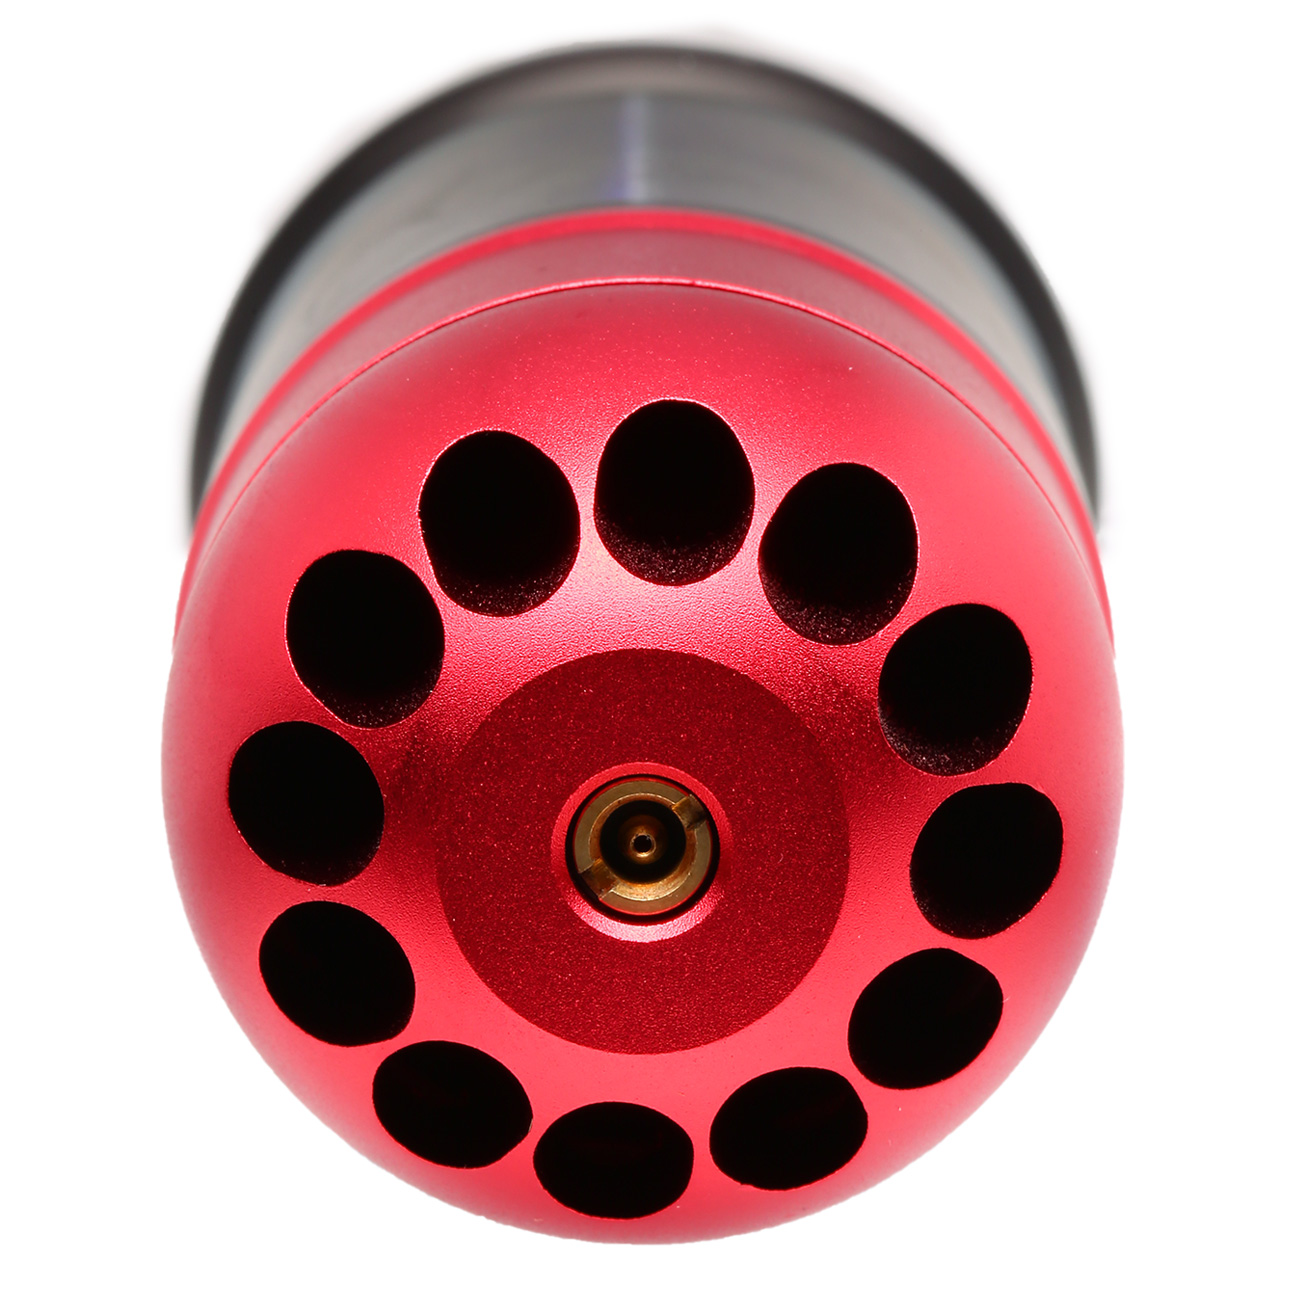 Versandrückläufer Nuprol 40mm Vollmetall Hülse / Einlegepatrone f. 72 6mm BBs rot Bild 1